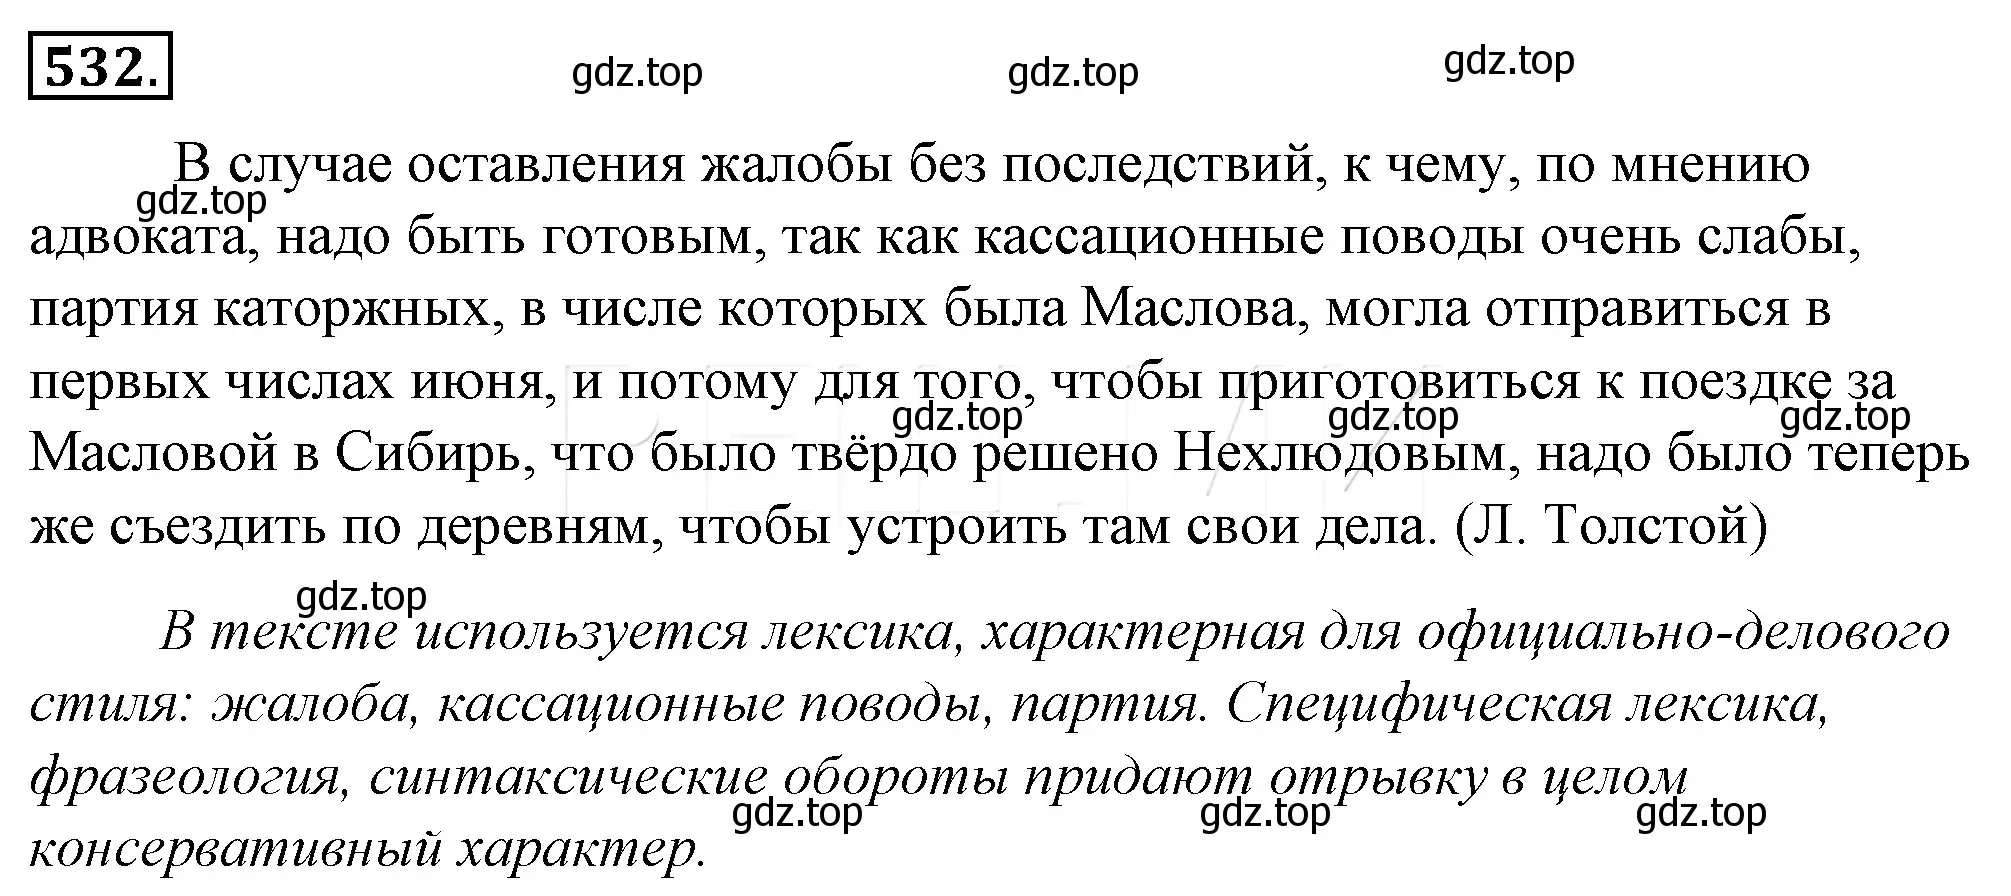 Решение 4. номер 208 (страница 285) гдз по русскому языку 10-11 класс Гольцова, Шамшин, учебник 2 часть